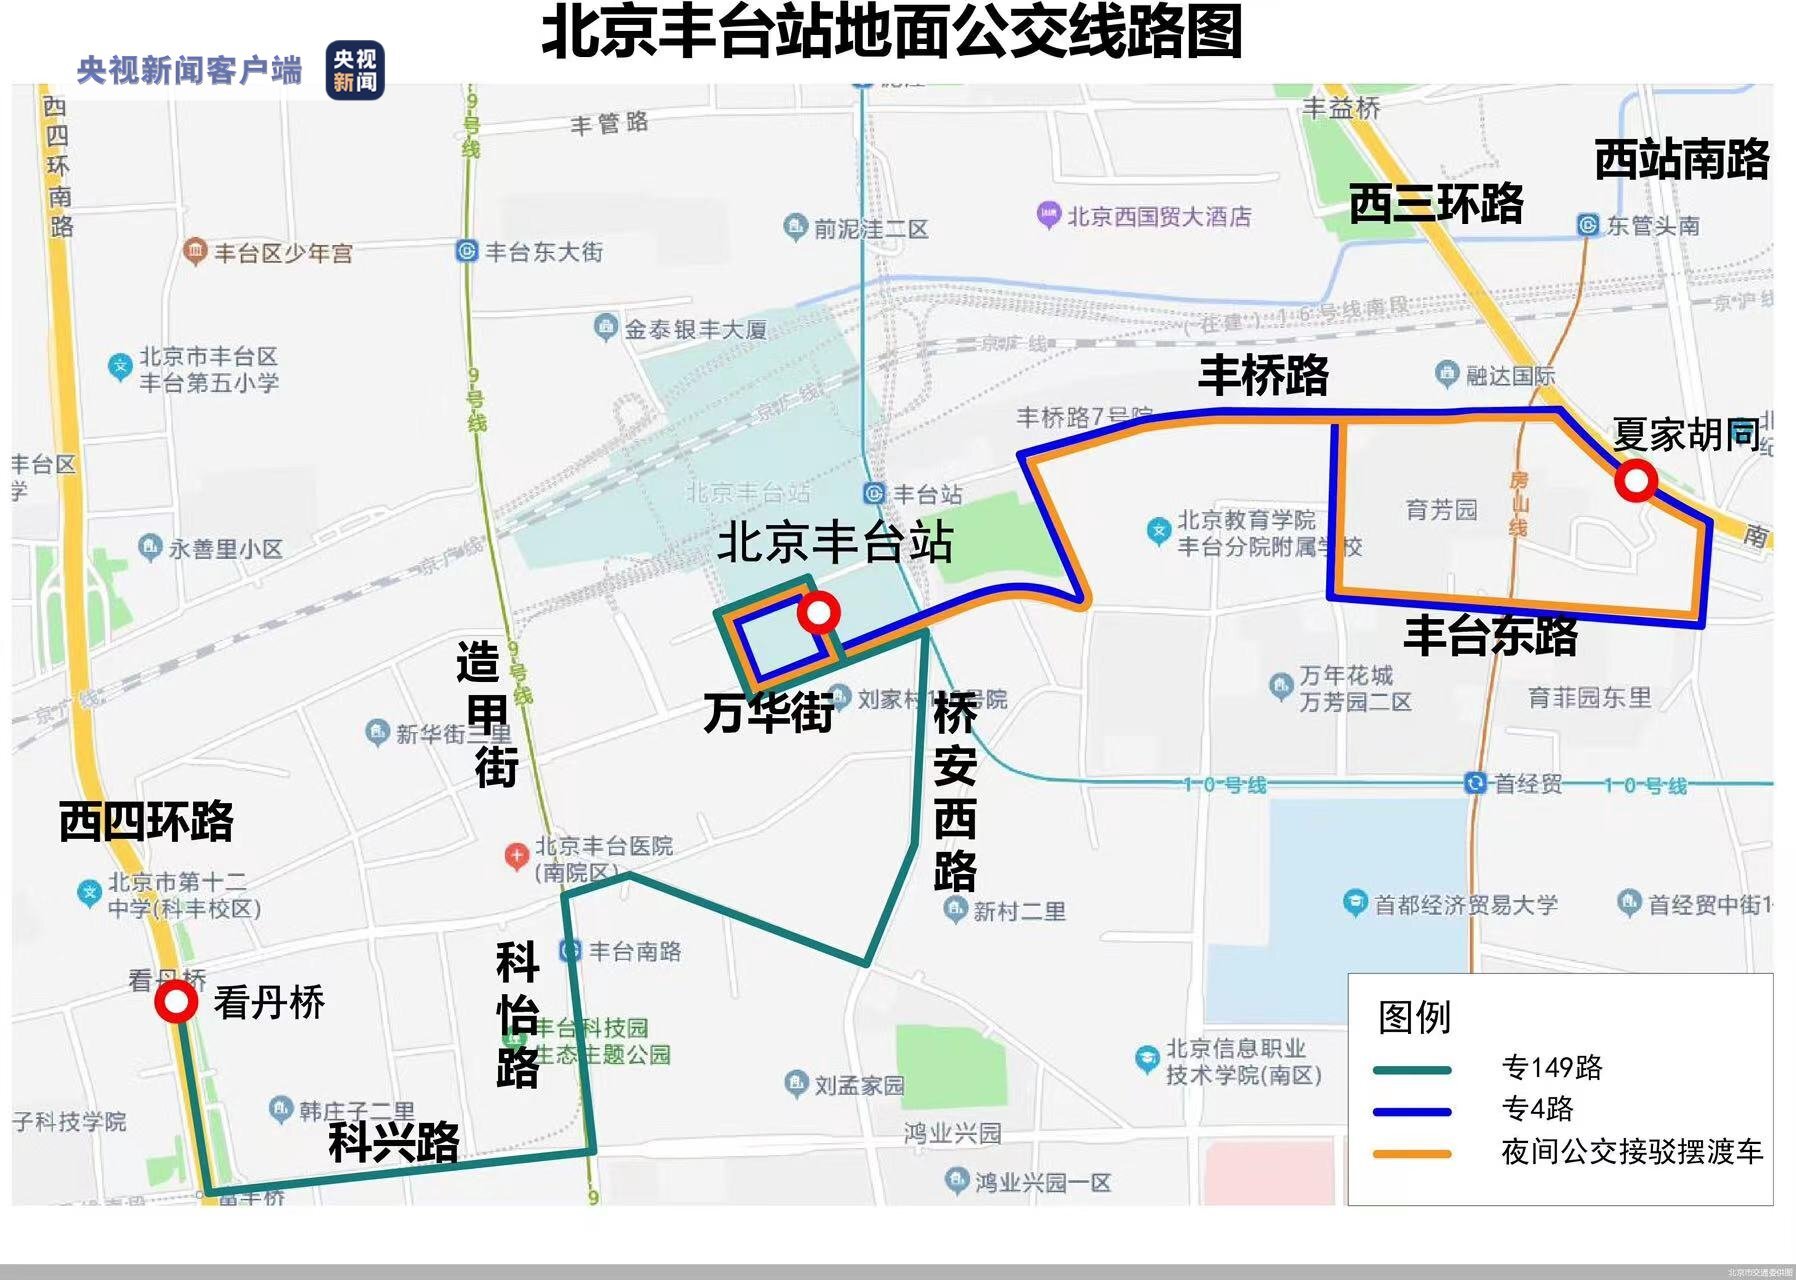 北京丰台站将于6月20日开通运行这份交通出行指南请您收藏好